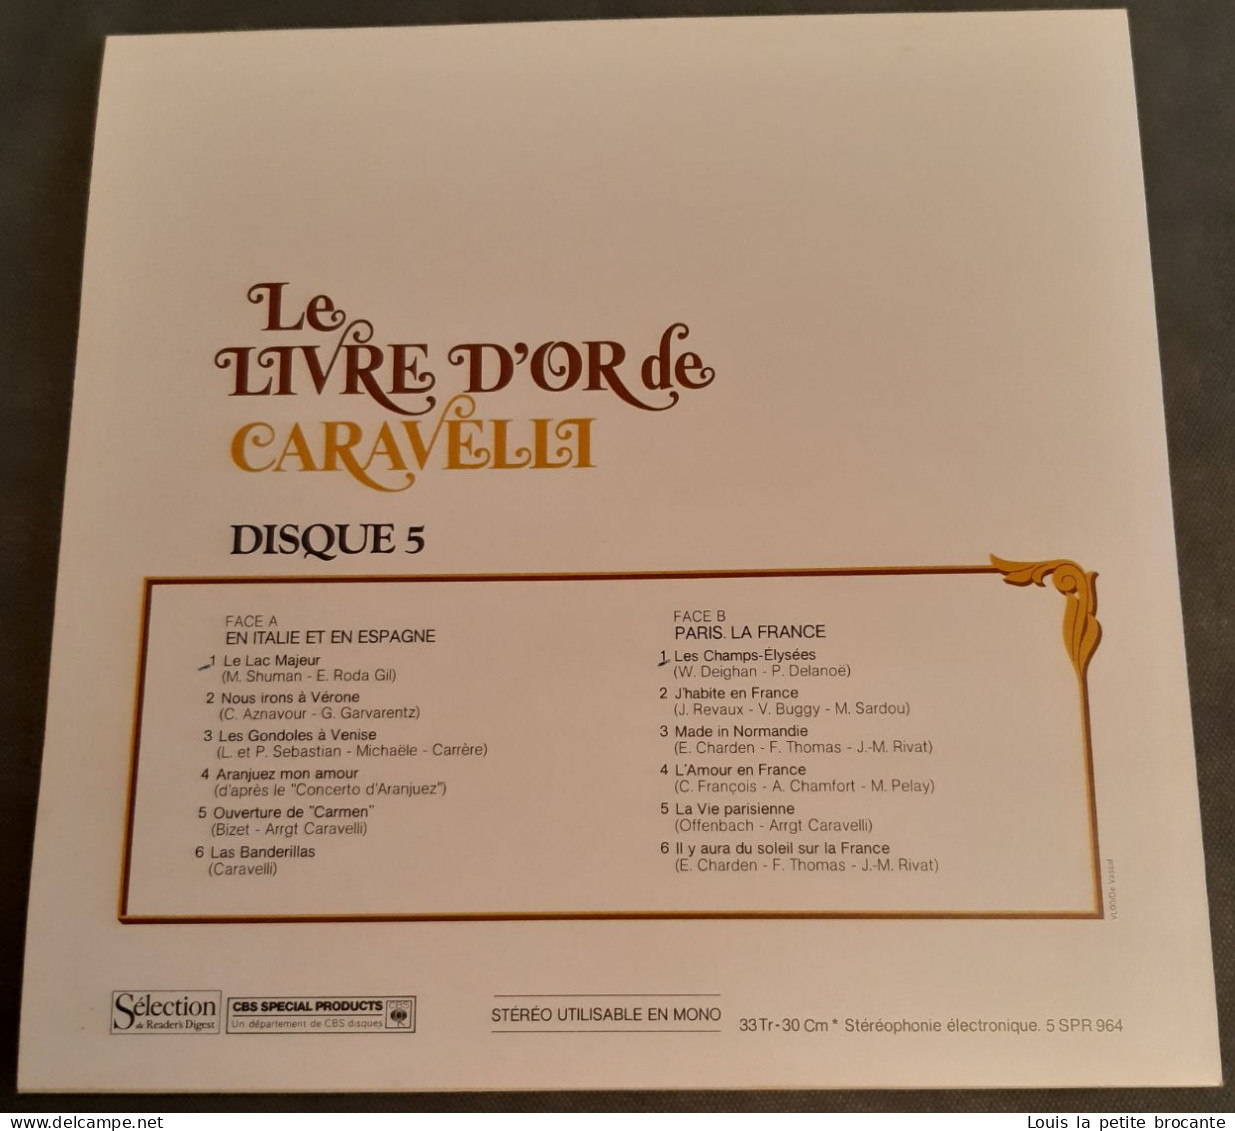 Coffret de 9 disques vinyles, LIVRE D'OR DE CARAVELLI, CBS - série SPR 960 - Sélection du Reader's Digest, enregistré en